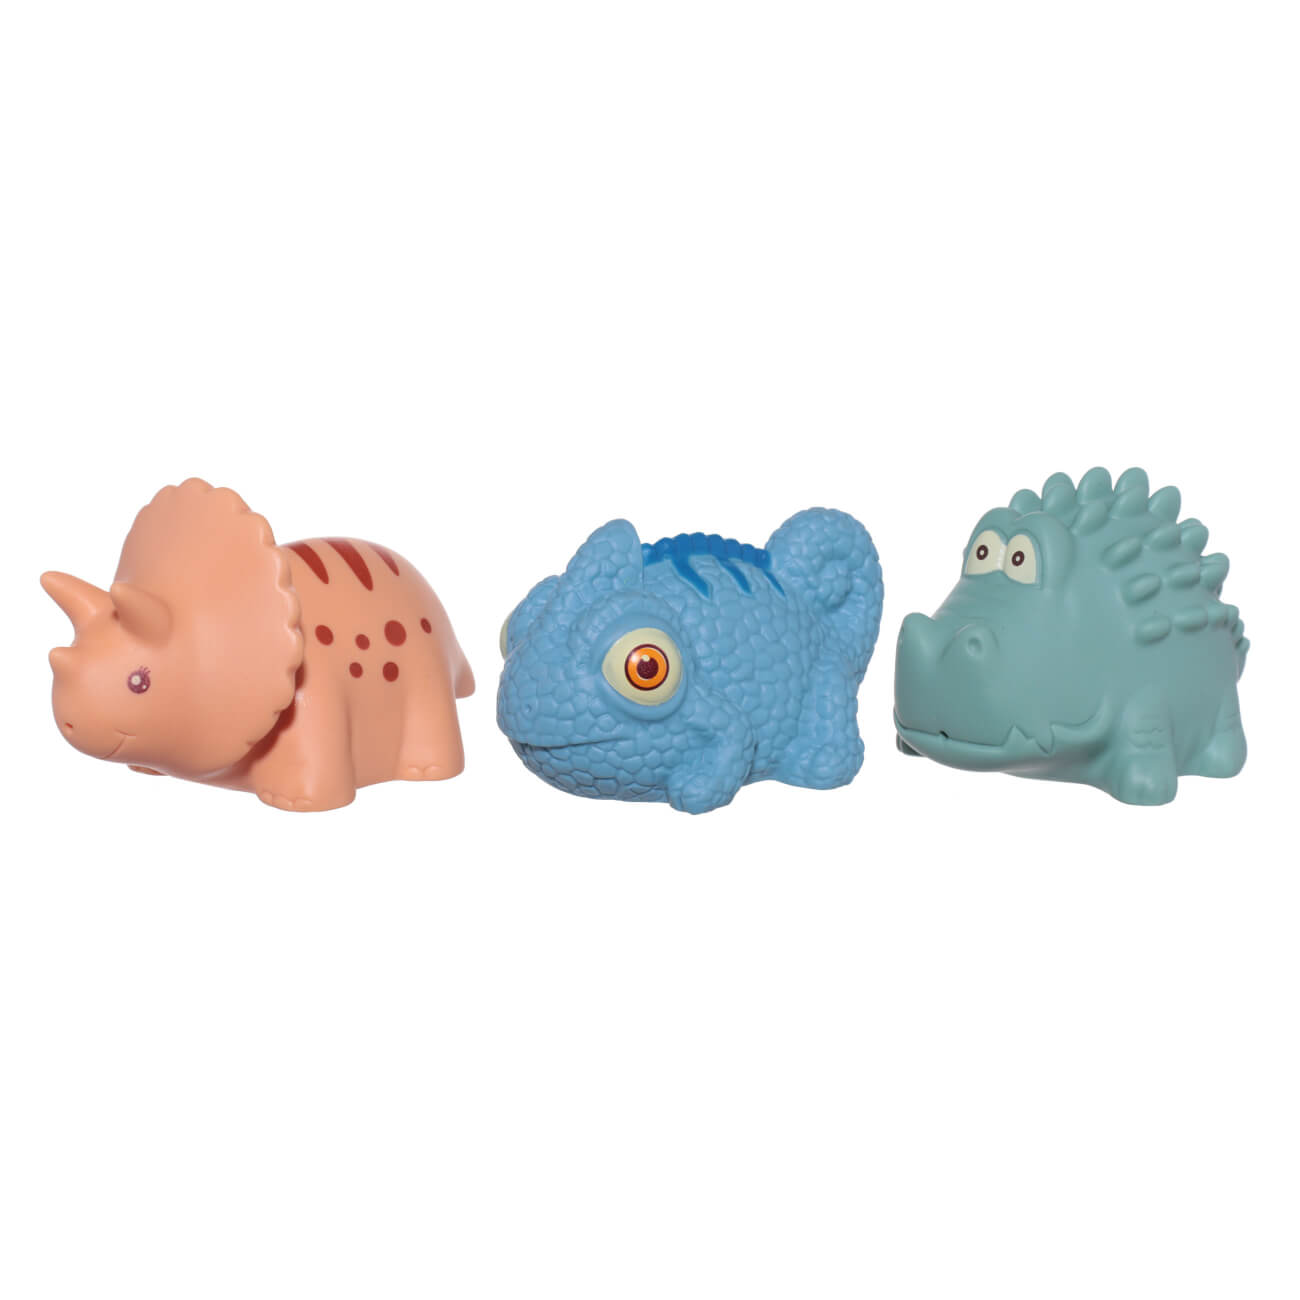 Набор игрушек для купания, 3 пр, ПВХ, цветной, Хамелеон/Динозавр/Крокодил, Kiddy изображение № 1